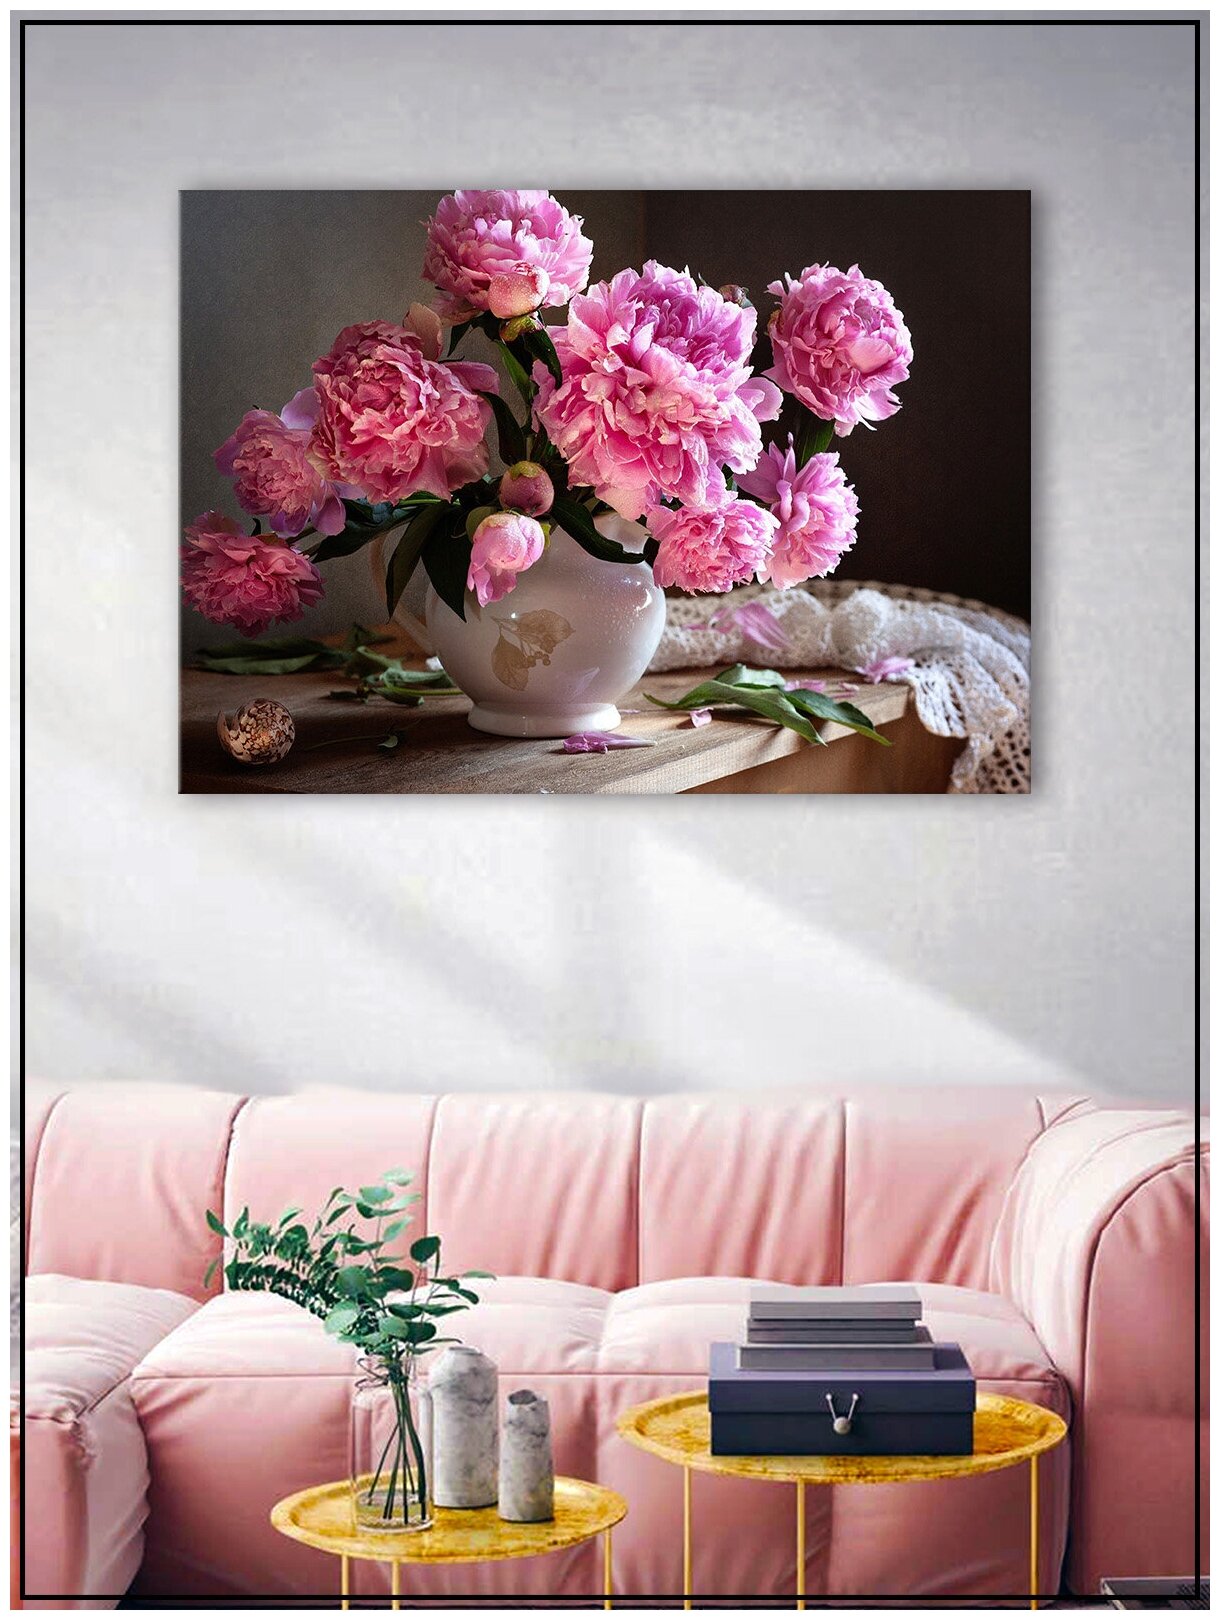 Картина для интерьера на натуральном хлопковом холсте "Пионы в вазе", 30*40см, холст на подрамнике, картина в подарок для дома